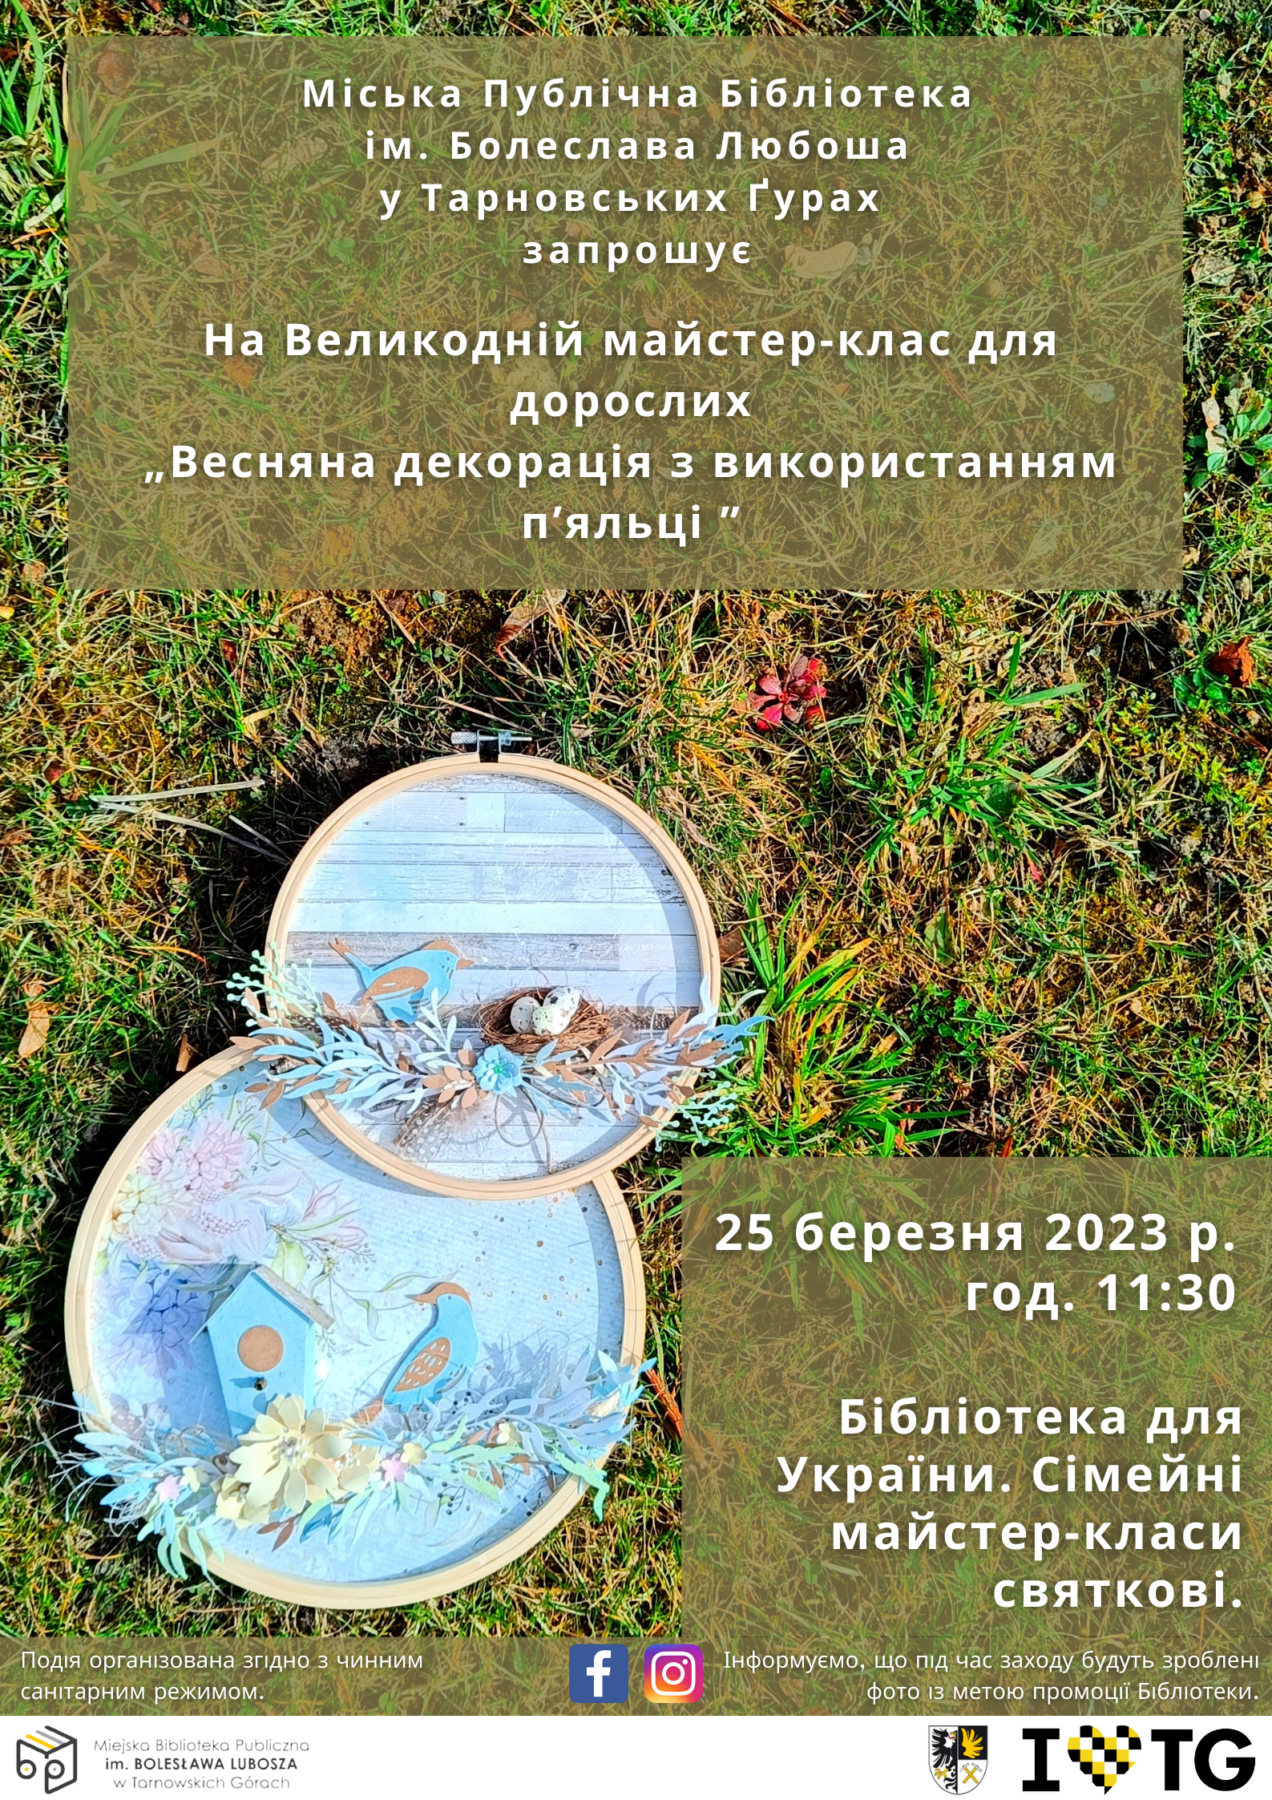 Wiosenna dekoracja z wykorzystaniem tamborka plakat ukraiński 